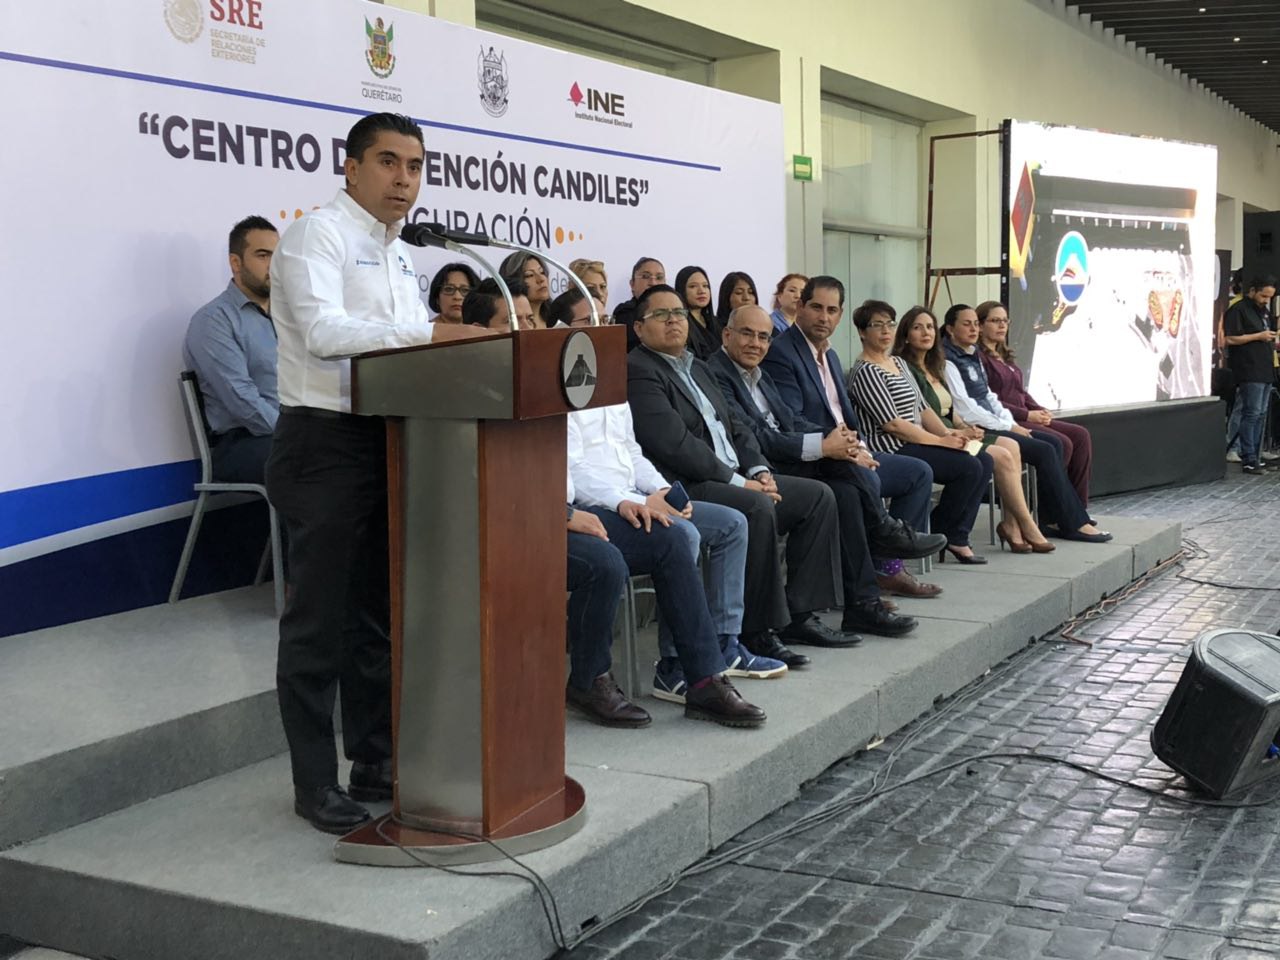  Corregidora inaugura nuevo CAM en Candiles